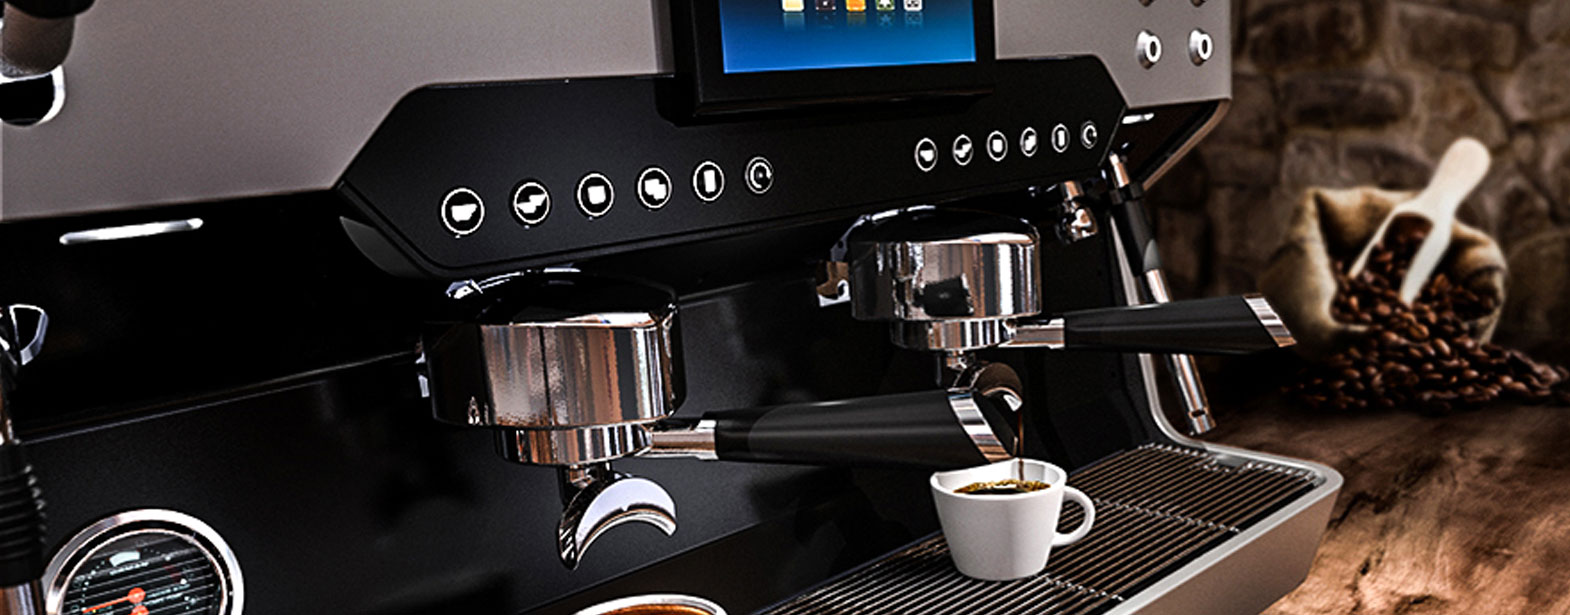 Le café est un art de vivre, R80 est une machine d’exception, un concentré de hautes technologies pour le meilleur du café. Elle est une référence dans le monde des Barista, le modèle haut de gamme de la marque Reneka. Un design novateur aux proportions assumées, de nouvelles matières aux surfaces harmonieuses et aux lignes idéalement structurées ; la R80 donne une impression d’élégance maîtrisée.